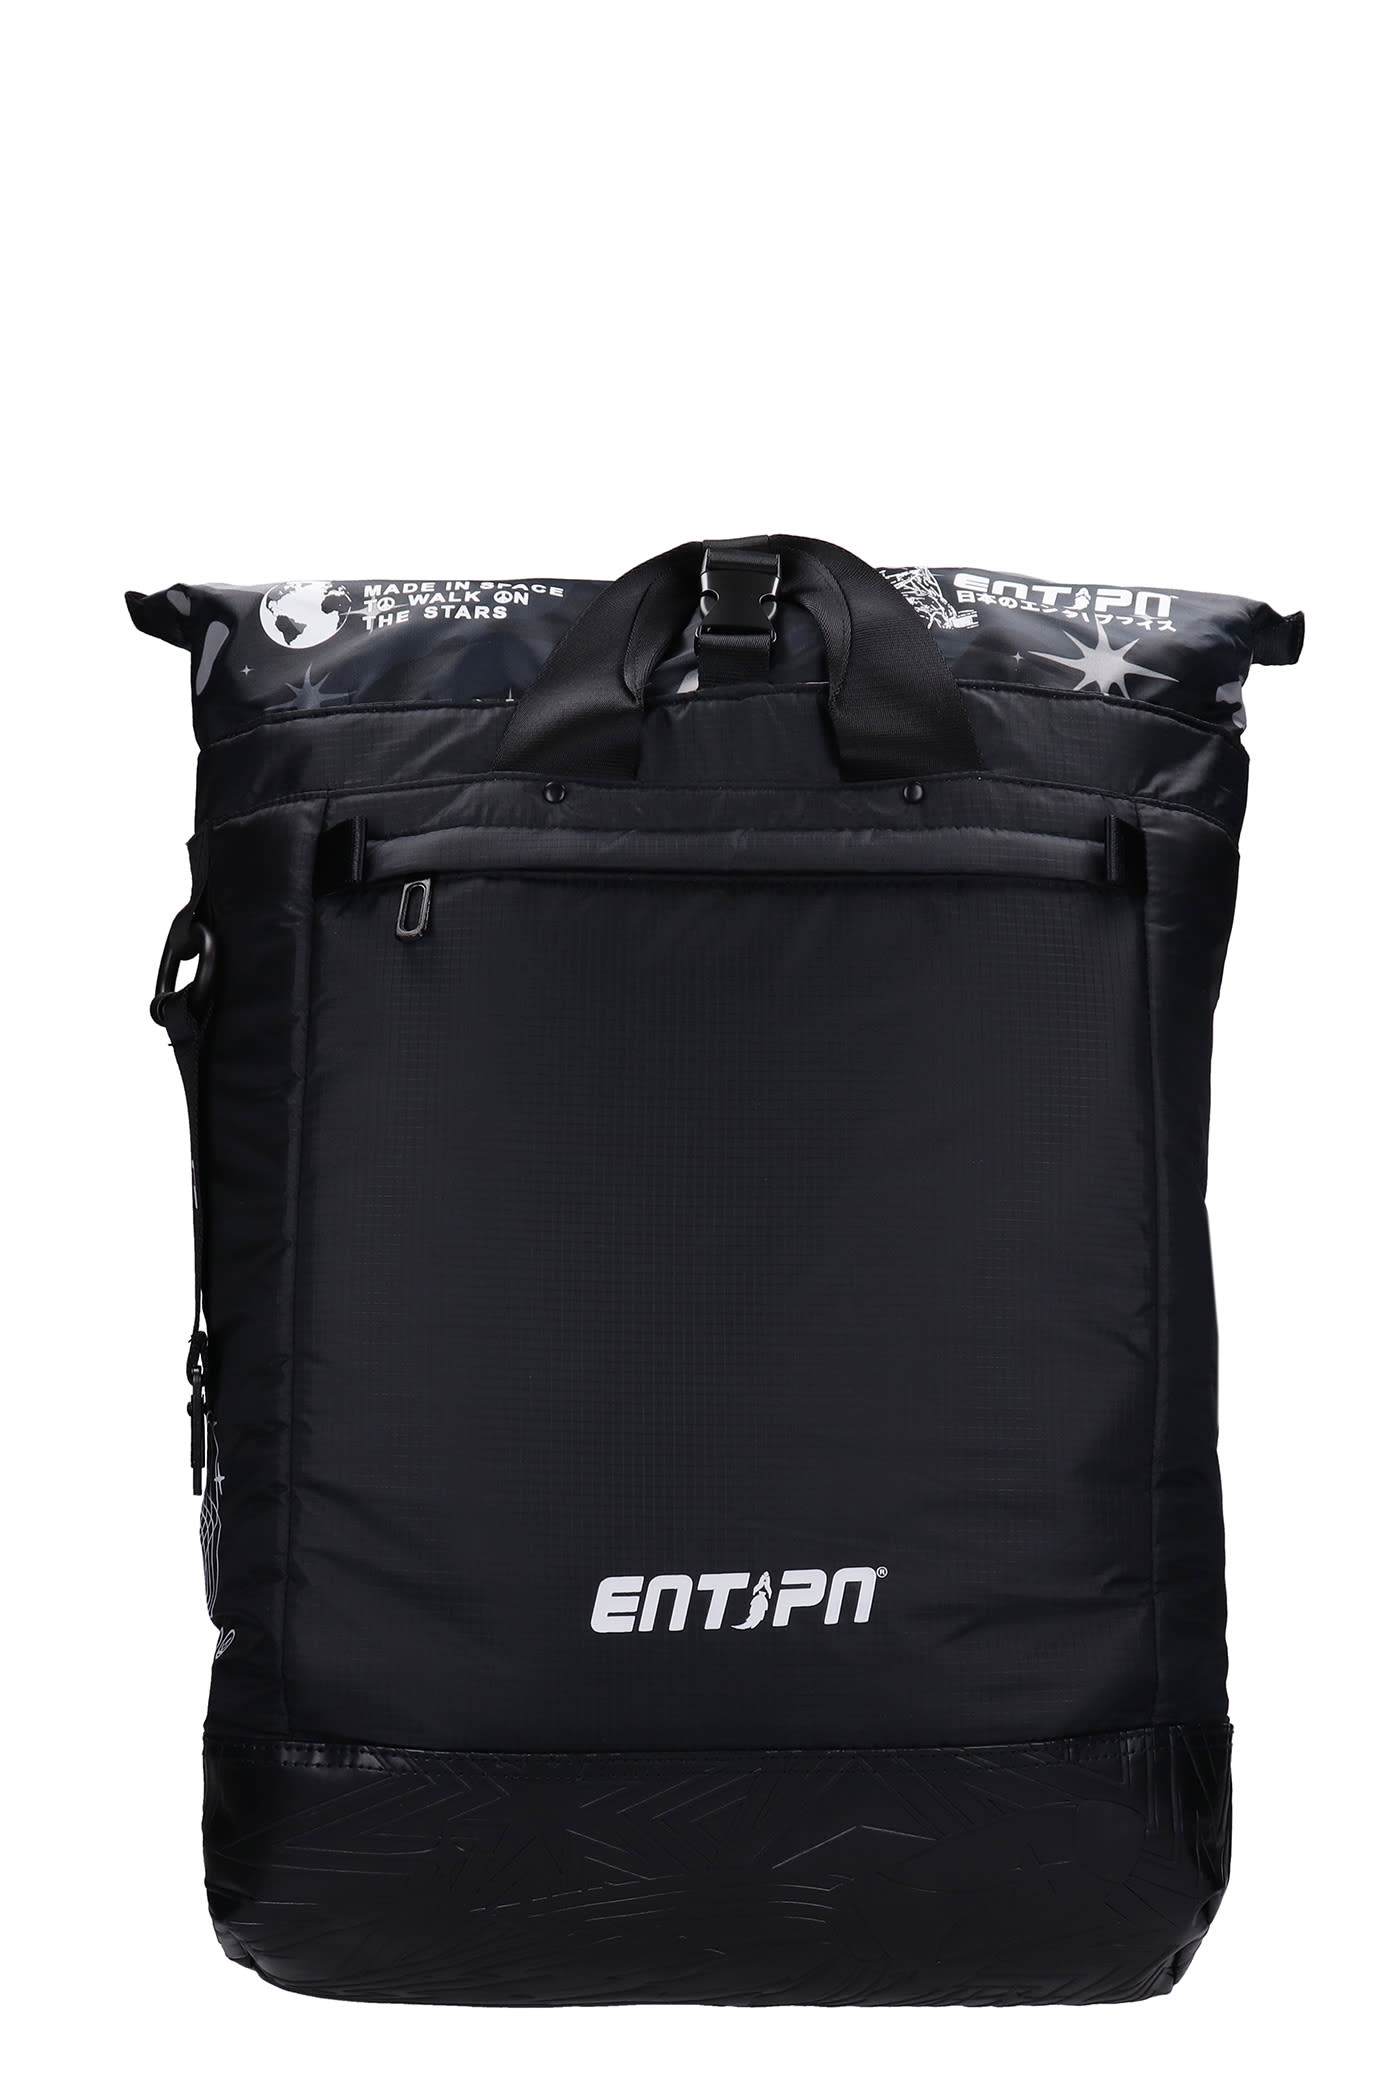 Enterprise Japan Backpack In Black Nylon